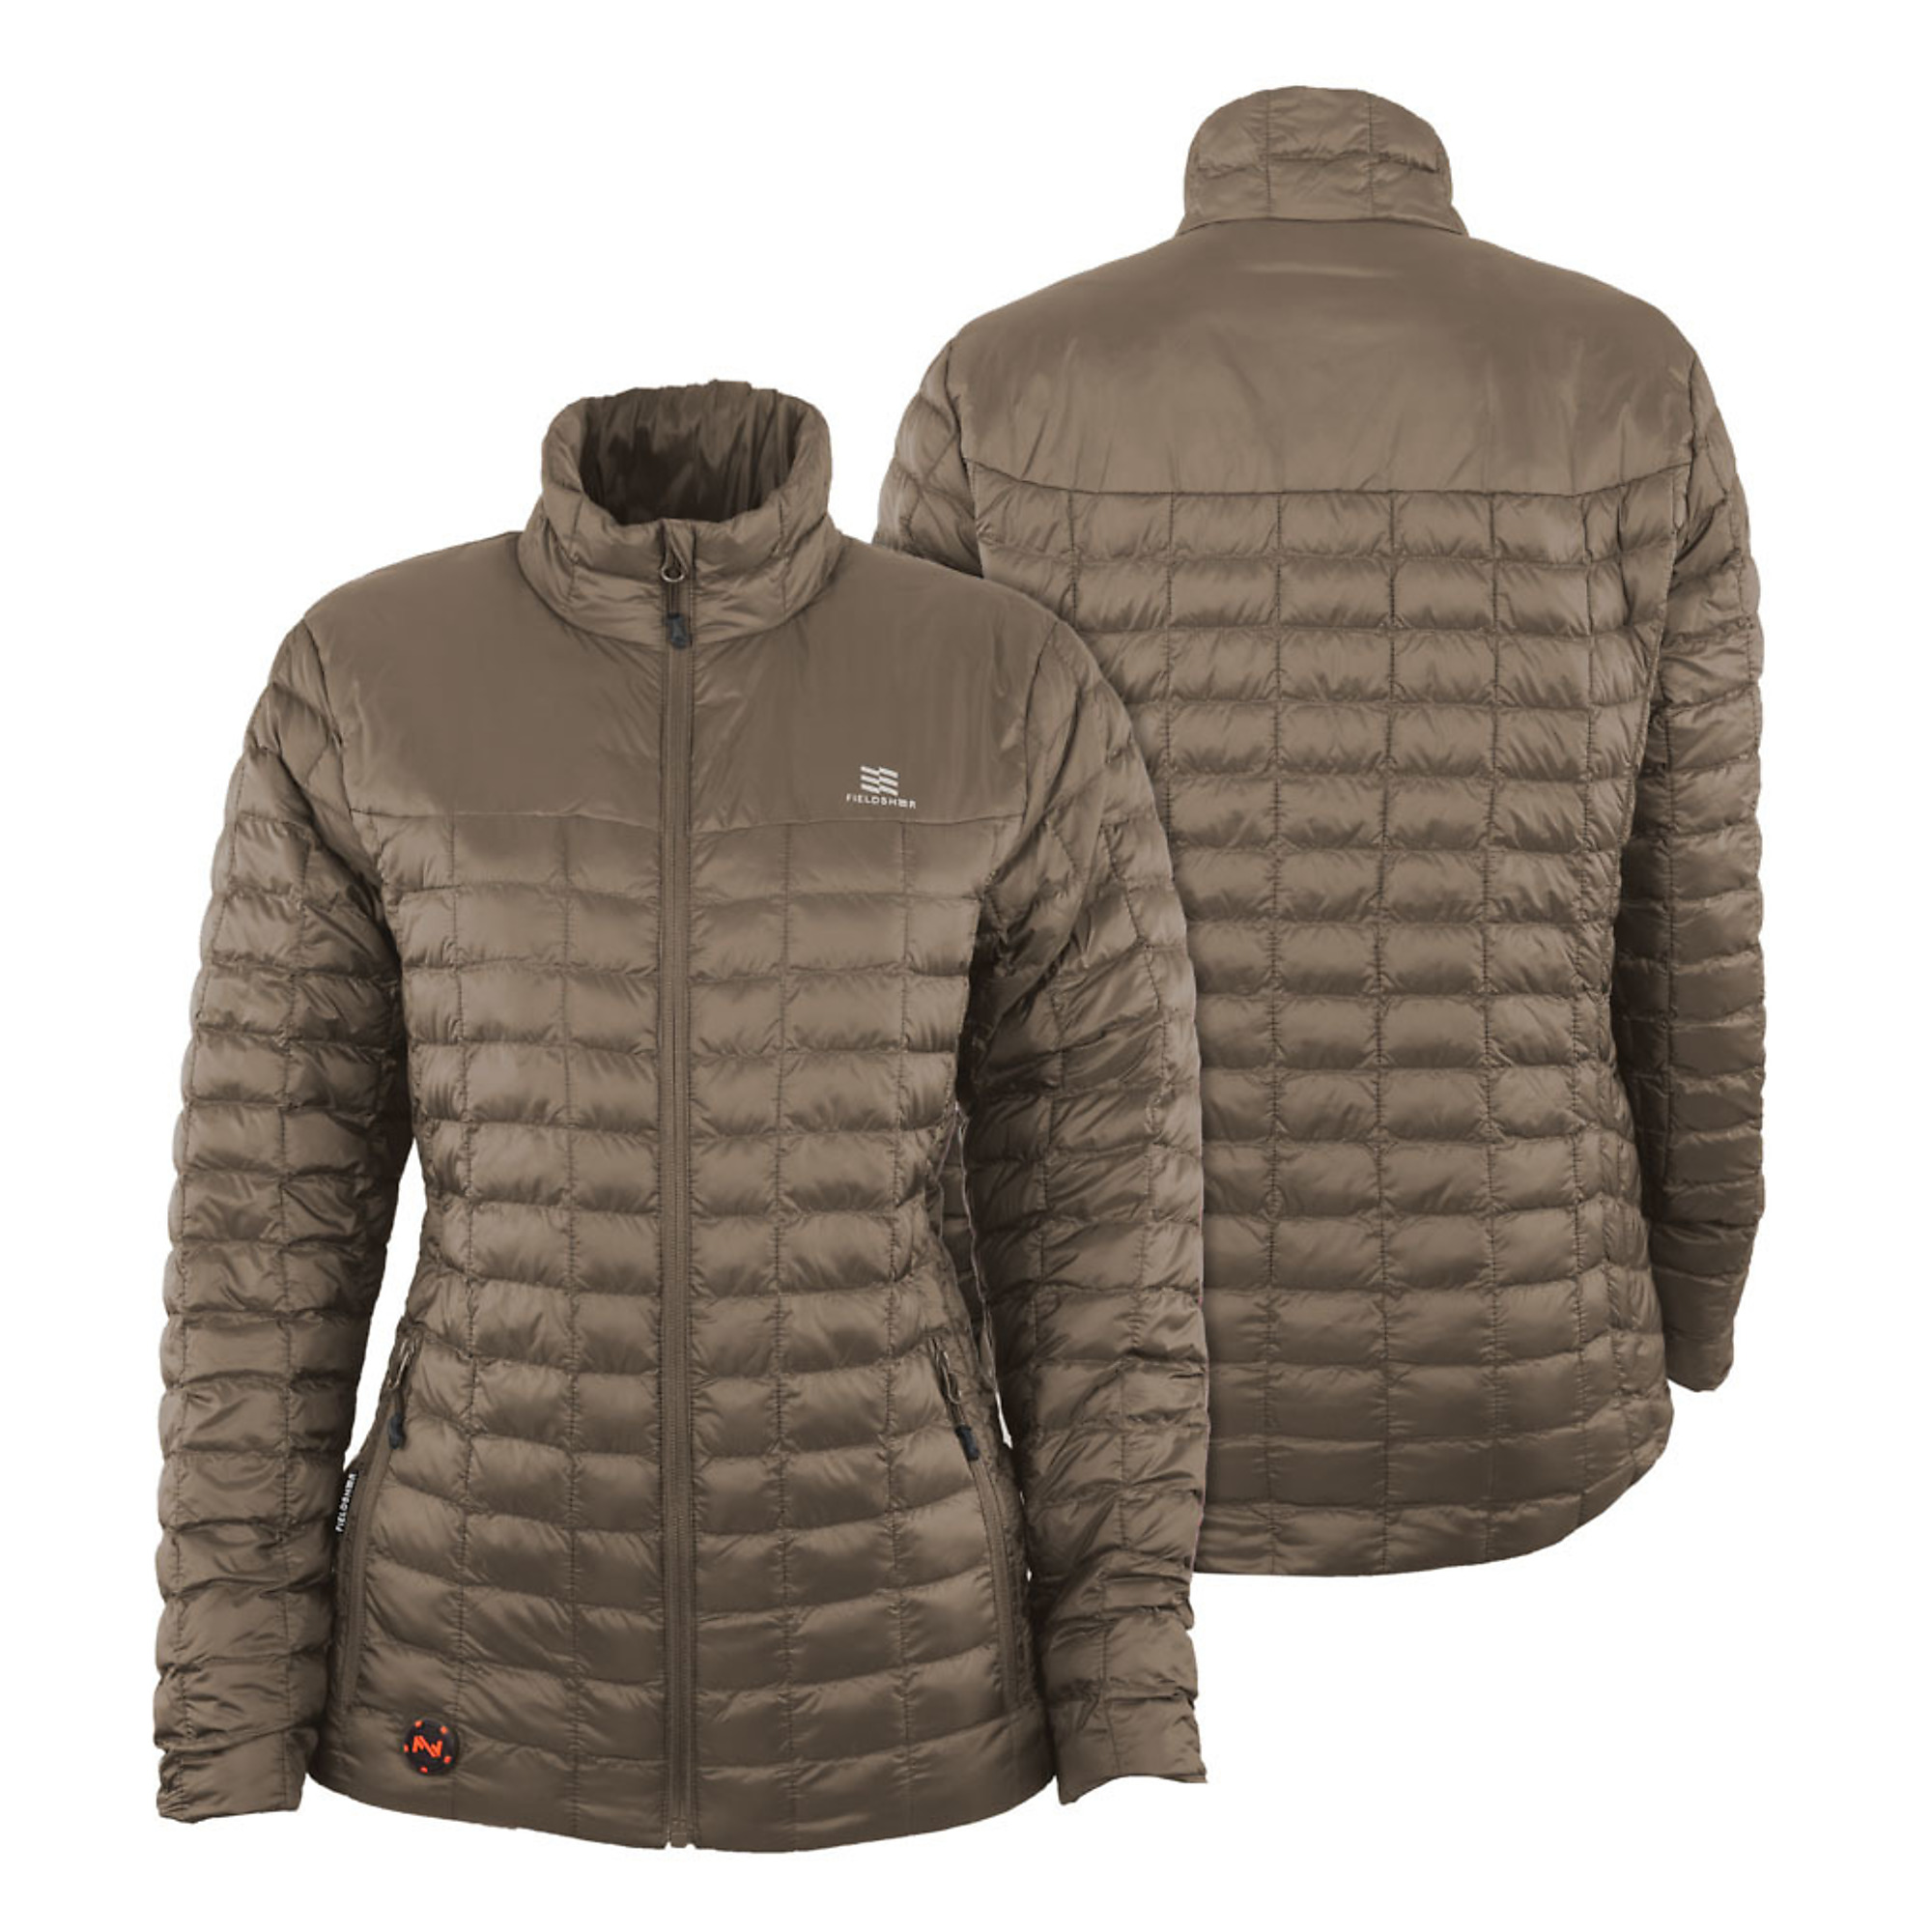 Fieldsheer, Women's 7.4v Backcountry Heated Jacket, Size S, Color Tan, Model MWWJ04340221